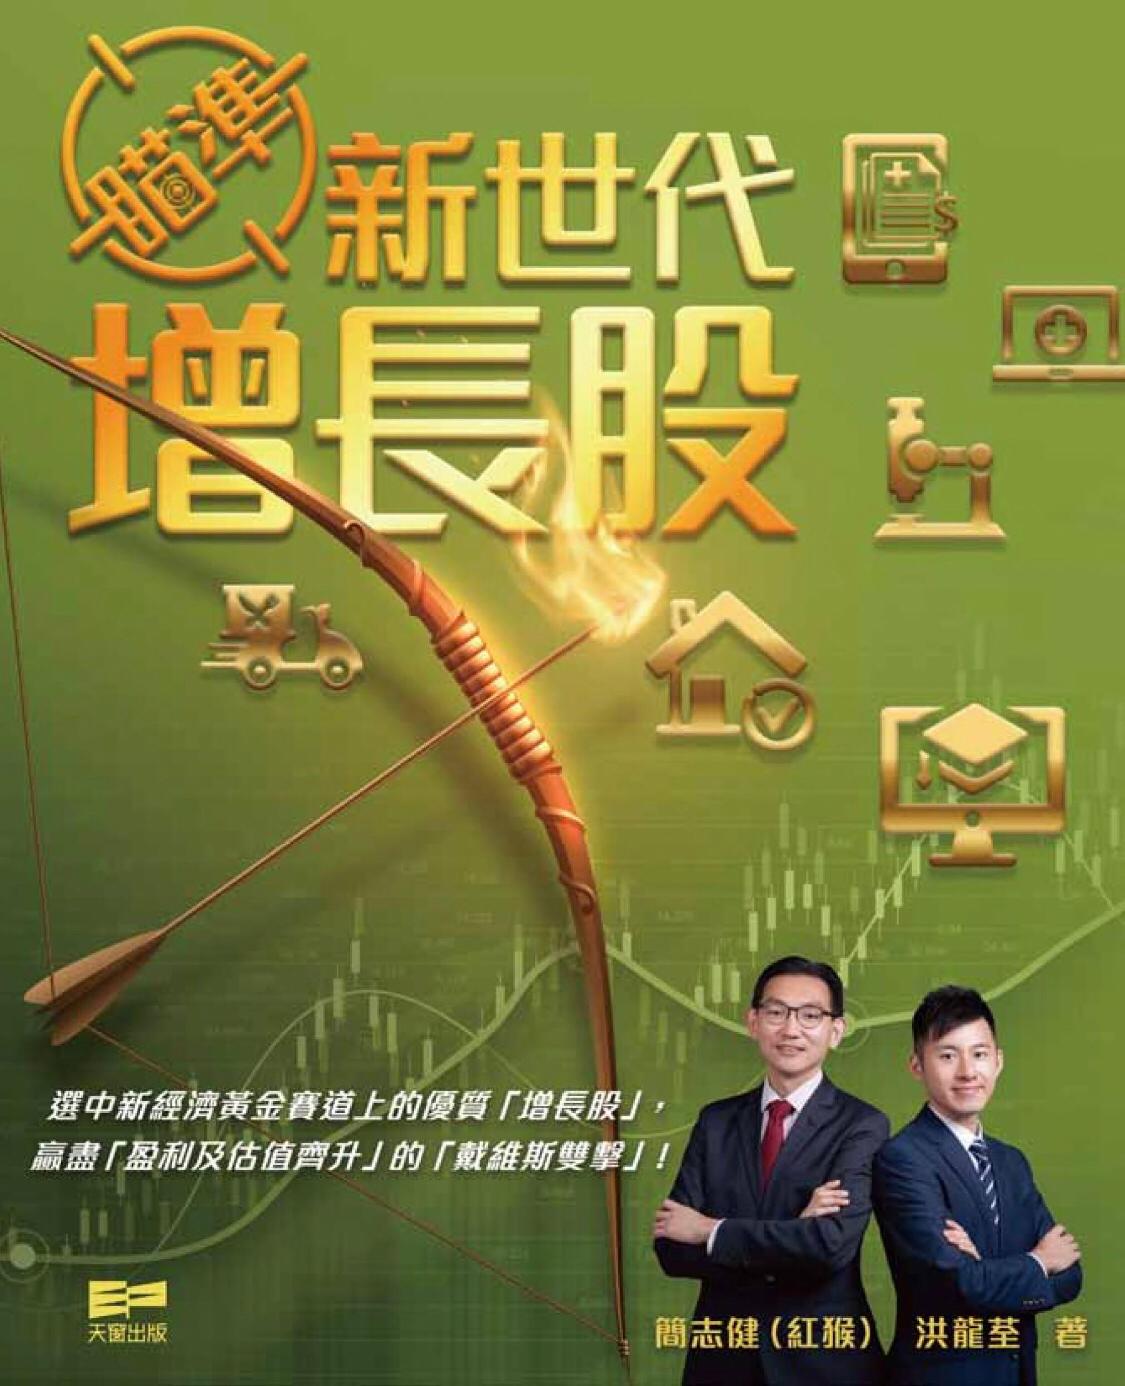 紅猴與Larry為「中原博立」投資拍檔，2020年合作出版財經書，登上香港主要連鎖書店財經書銷量首位，令新世代增長股更受注目！